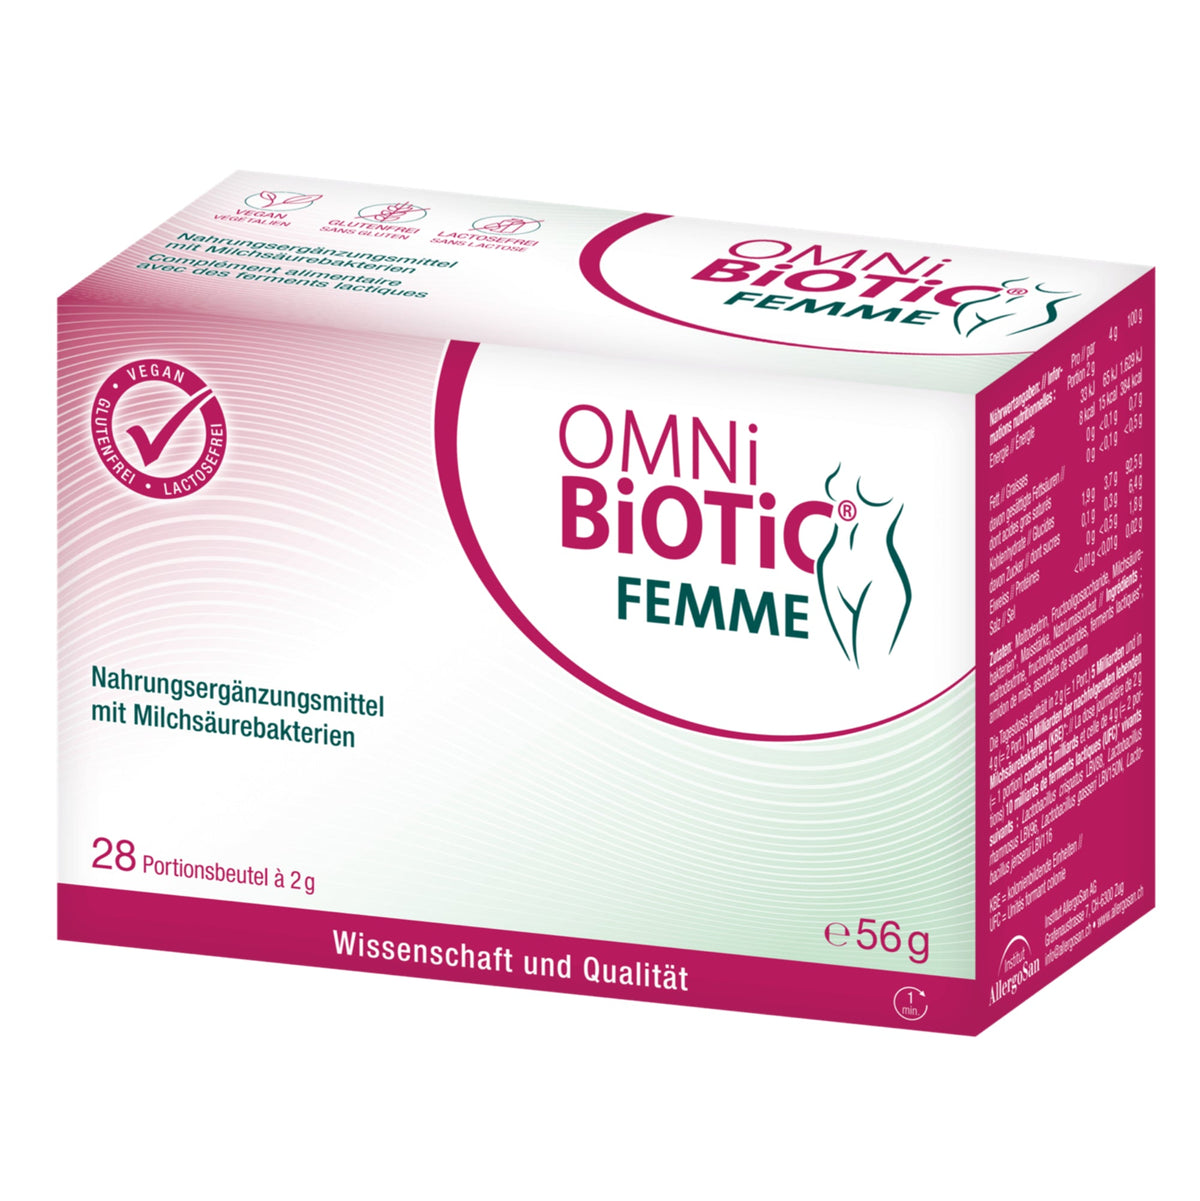 OMNi-BiOTiC® FEMME 28 Btl à 2g (Aktion)